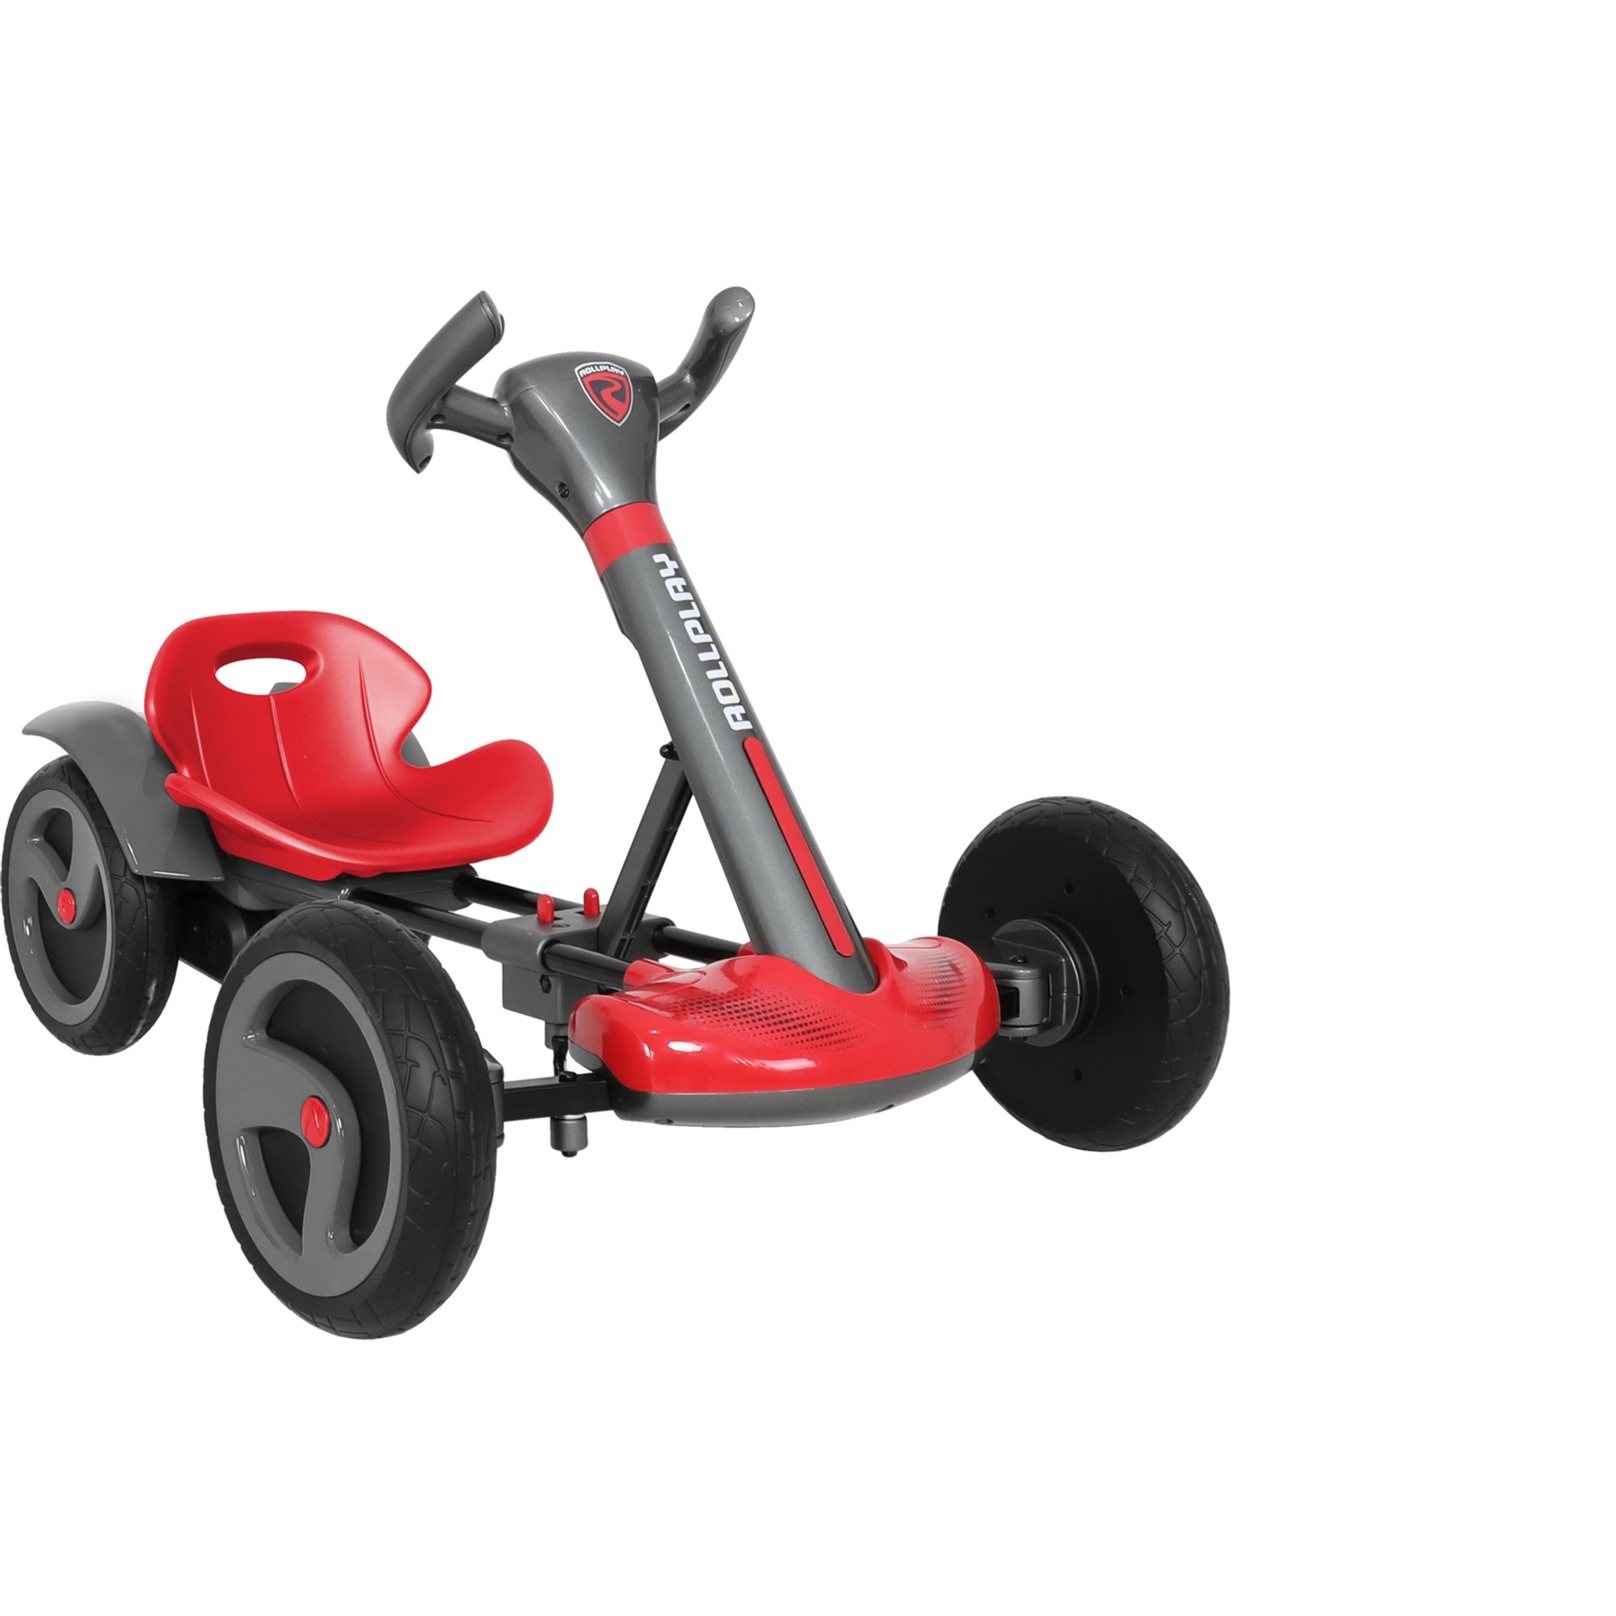 Image of Alternate - Flex Kart, Kinderfahrzeug online einkaufen bei Alternate